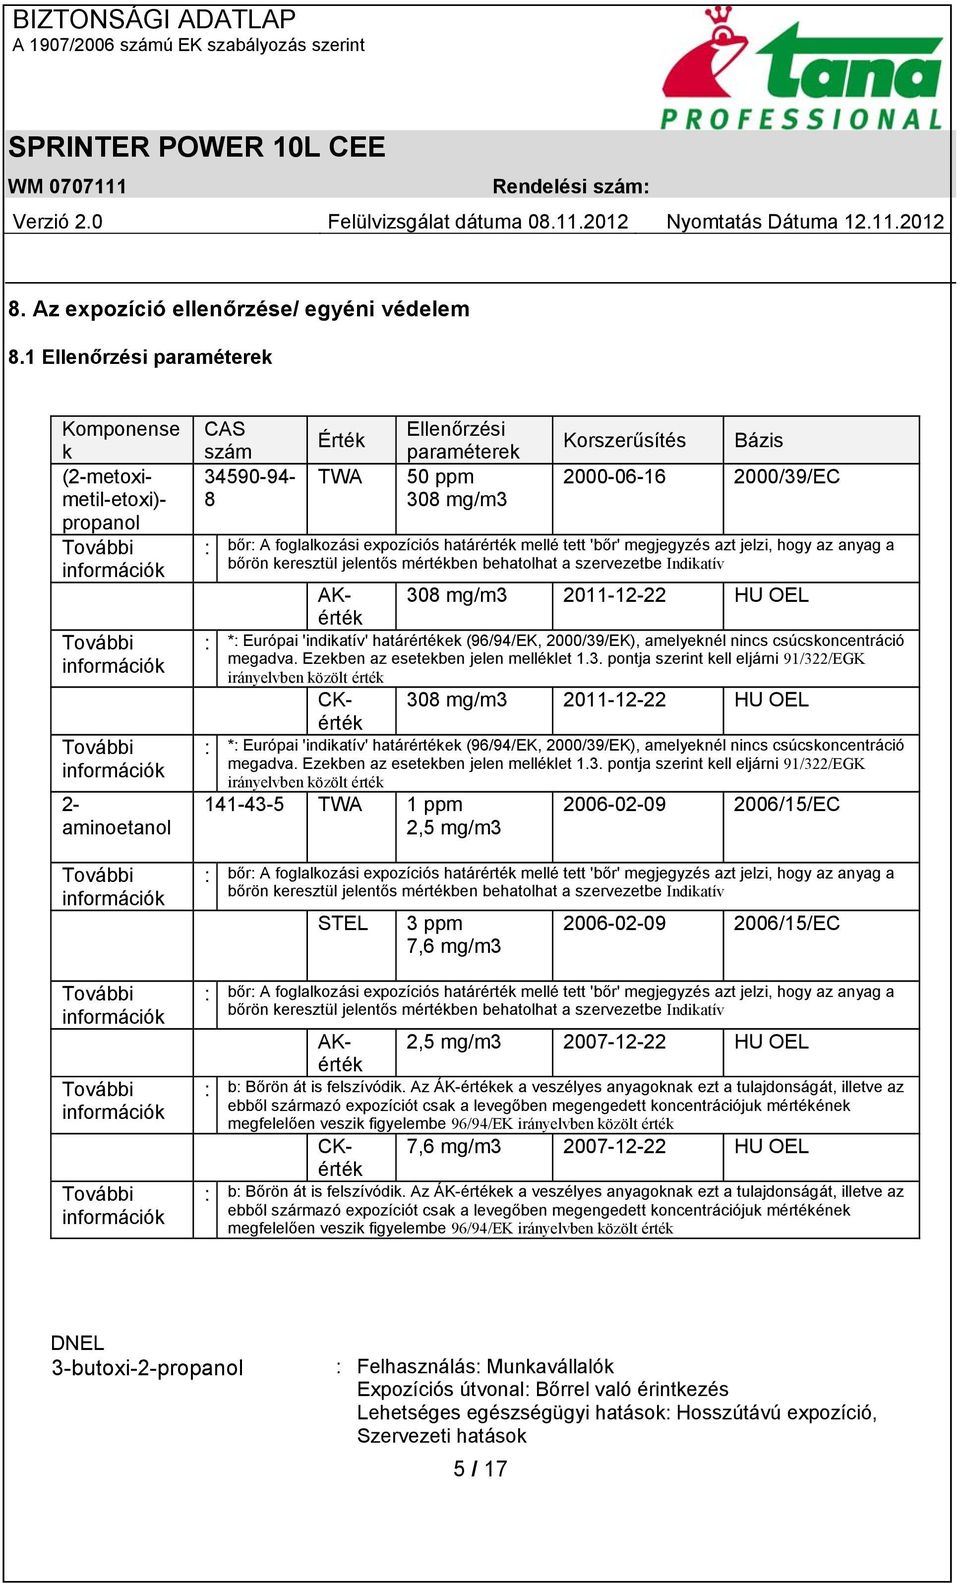 propanol További információk CAS szám 34590-94- 8 Érték TWA Ellenőrzési paraméterek 50 ppm 308 mg/m3 Korszerűsítés Bázis 2000-06-16 2000/39/EC : bőr: A foglalkozási expozíciós határérték mellé tett